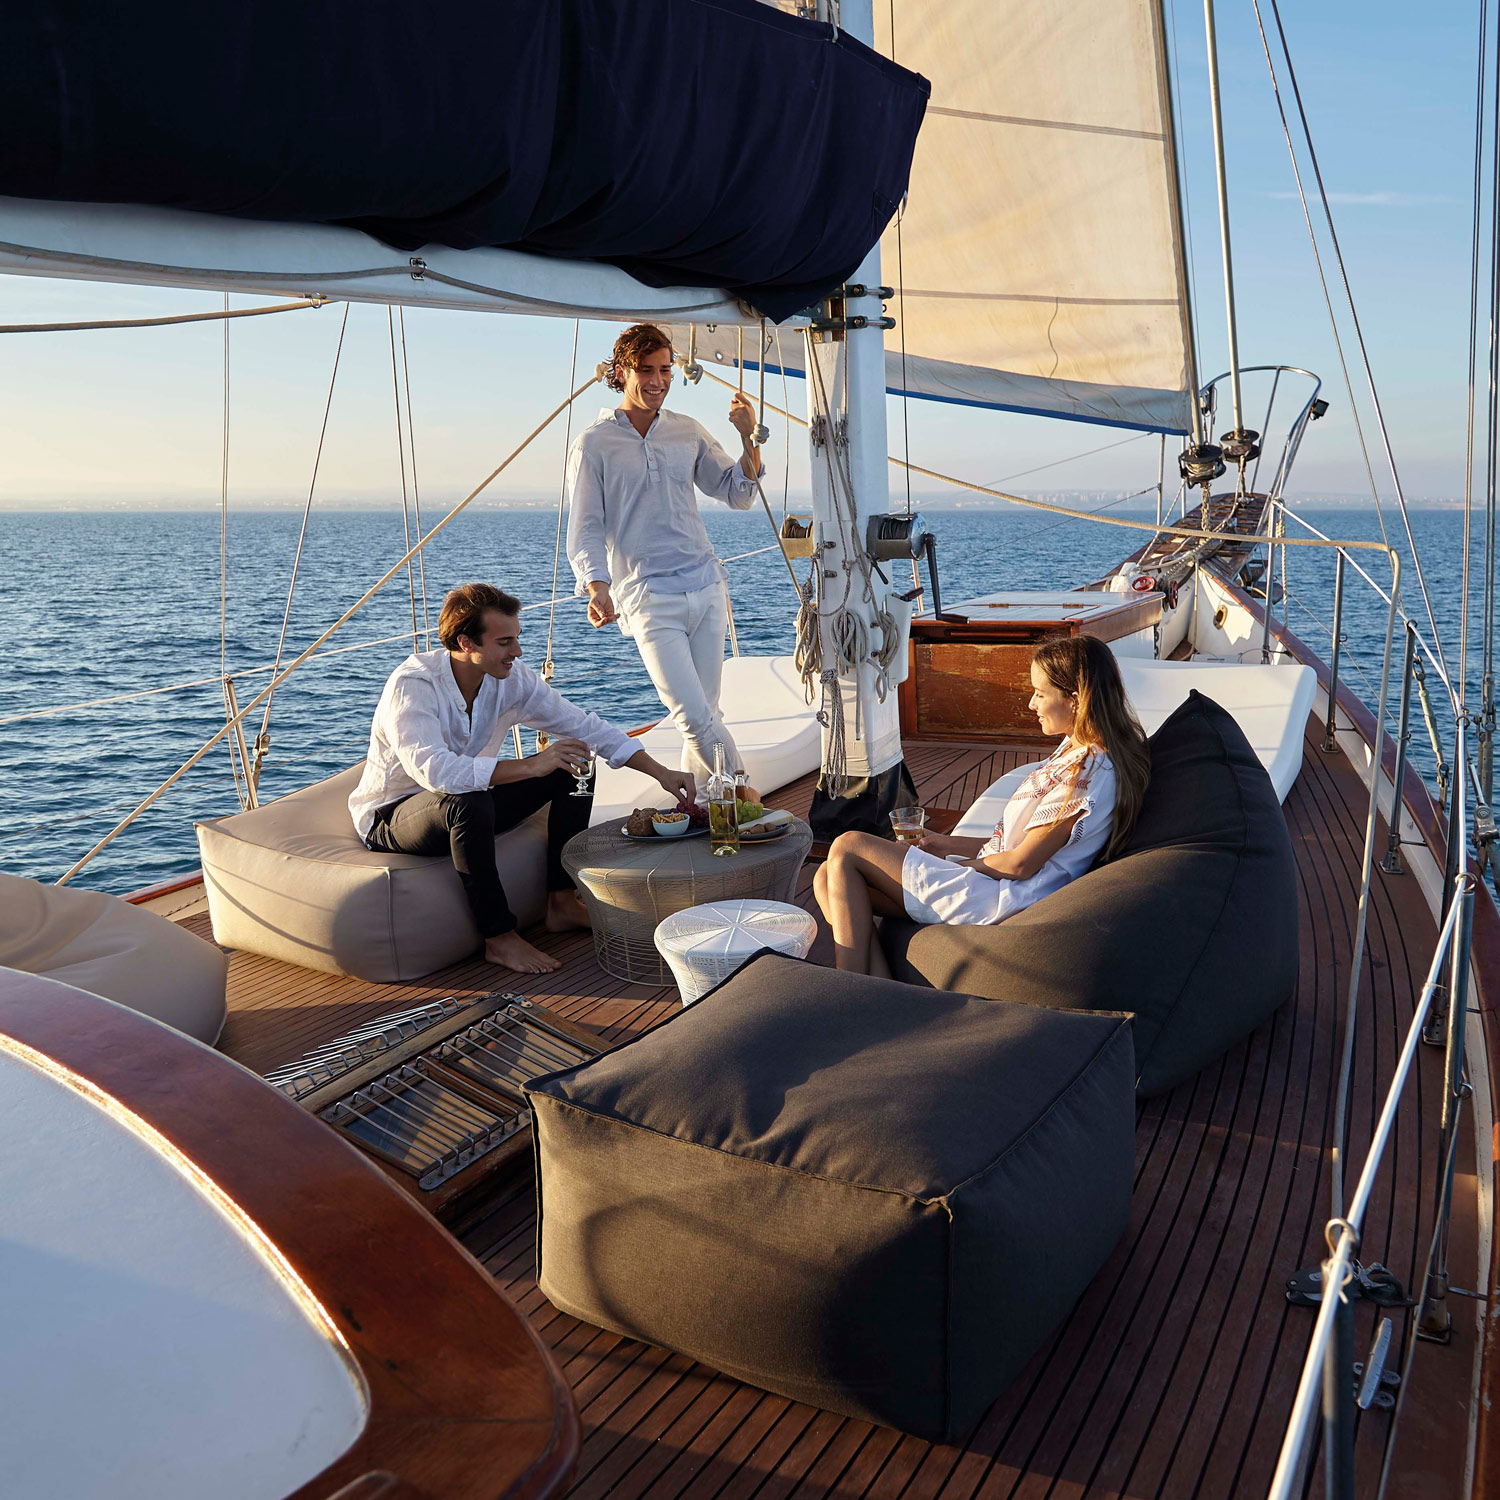 Skab dit udeliv med havemøbler lounge fra serien Sail Outdoor fra Gitz Design